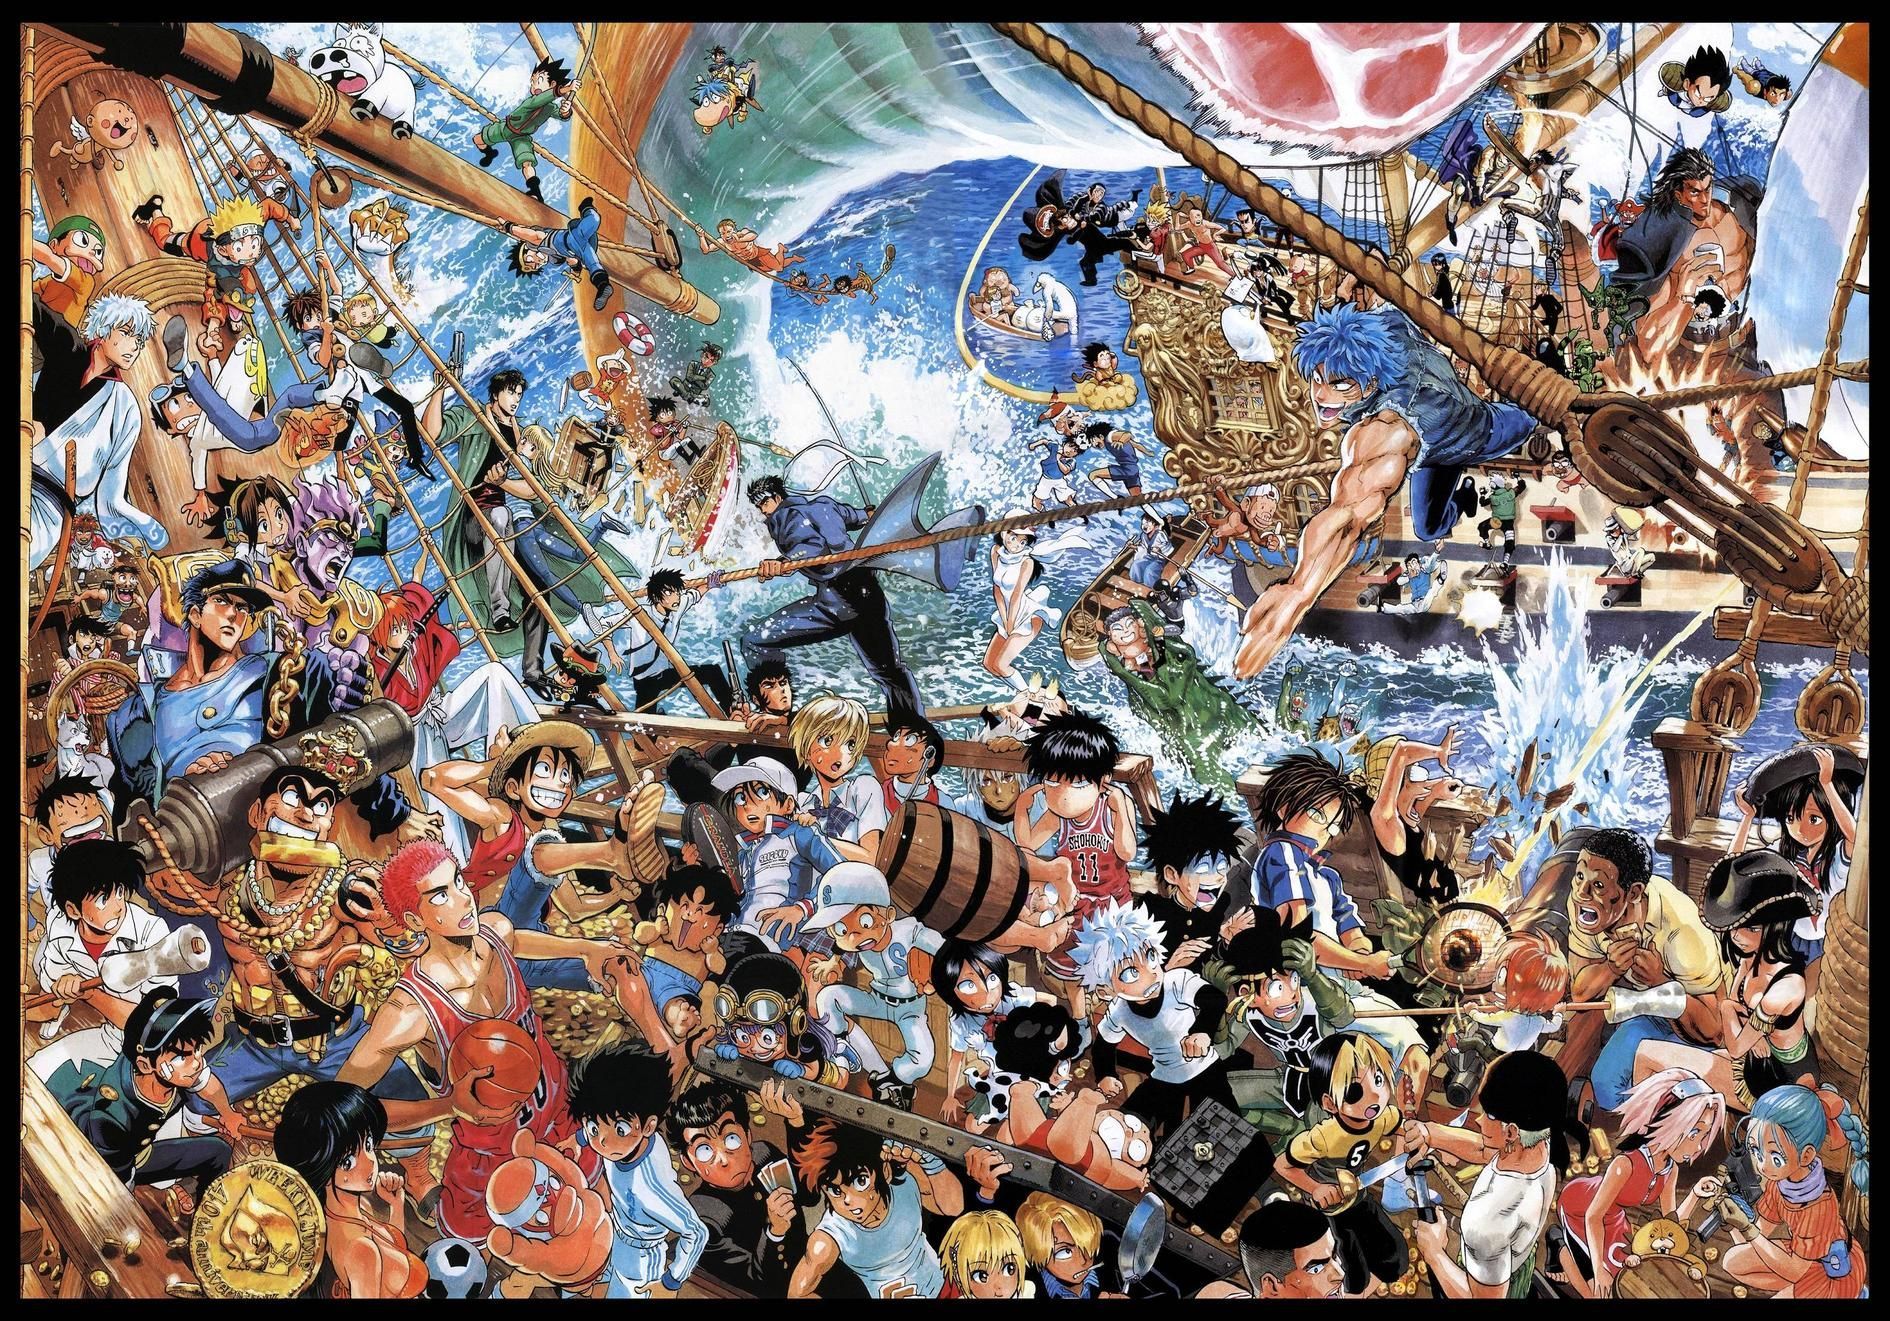 Shonen Jump 40th Anniversary Poster by Yusuke Murata Cleaned